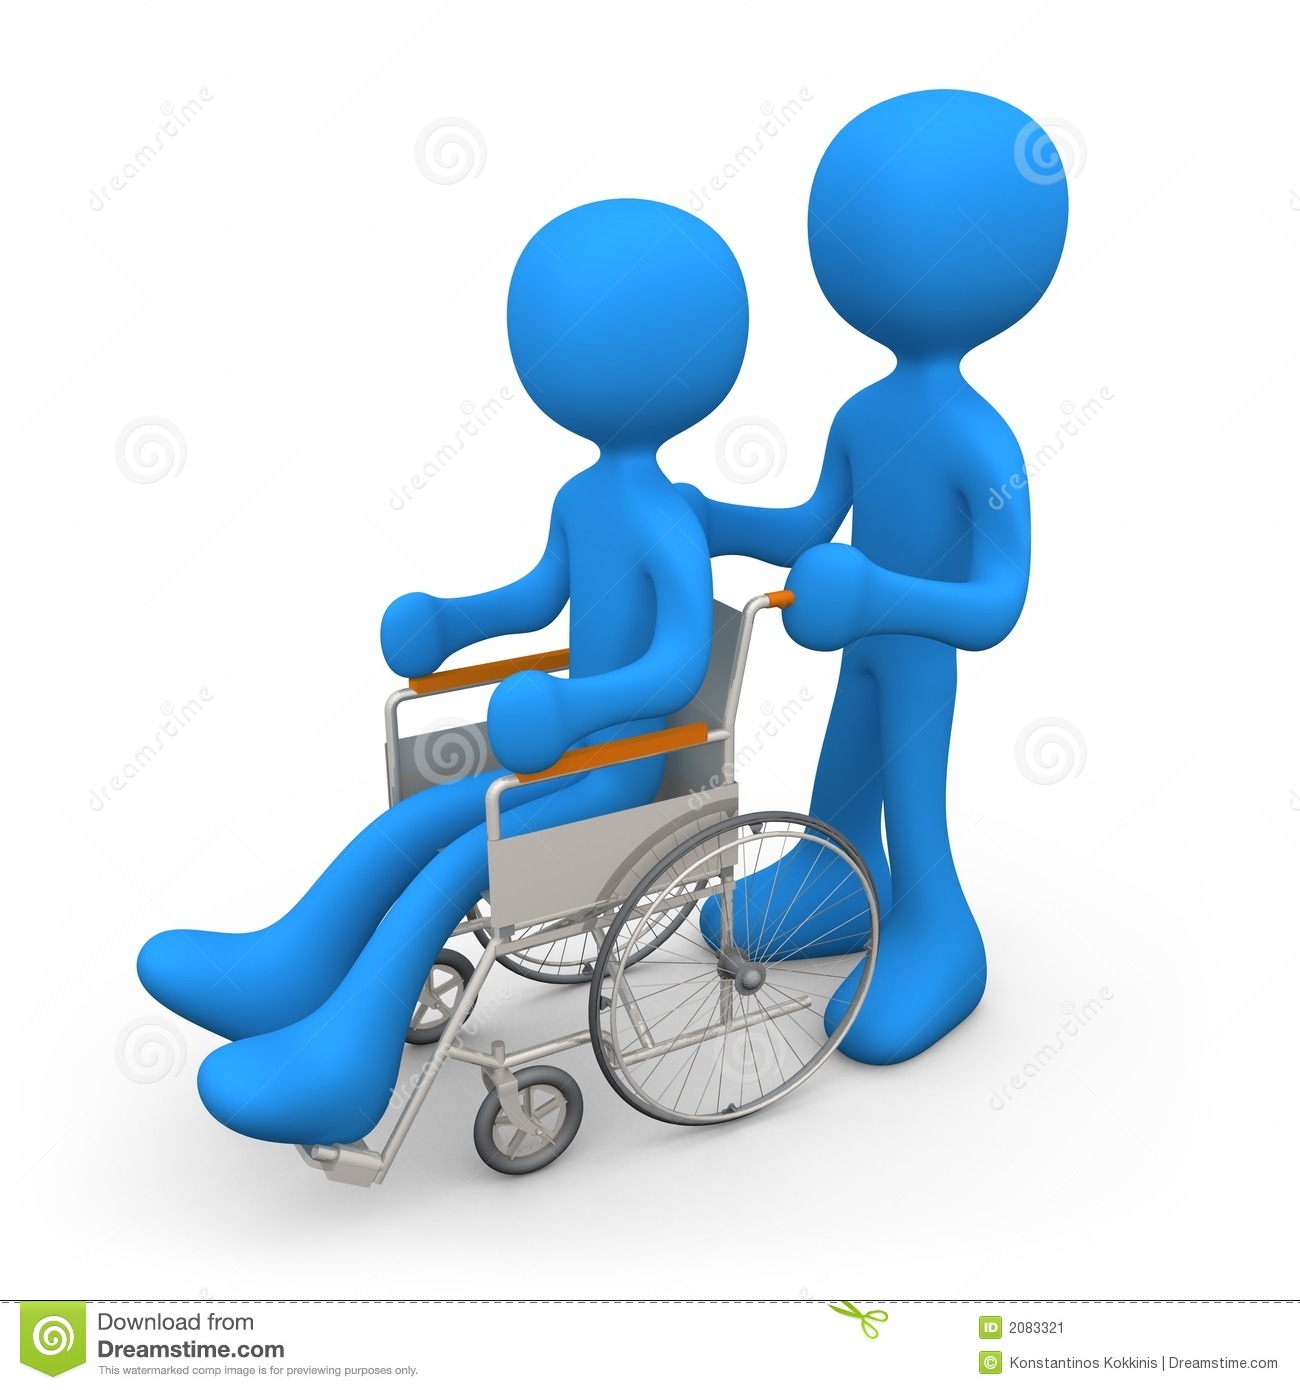 Pessoa Na Cadeira De Rodas Imagem De Stock   Imagem  2083321